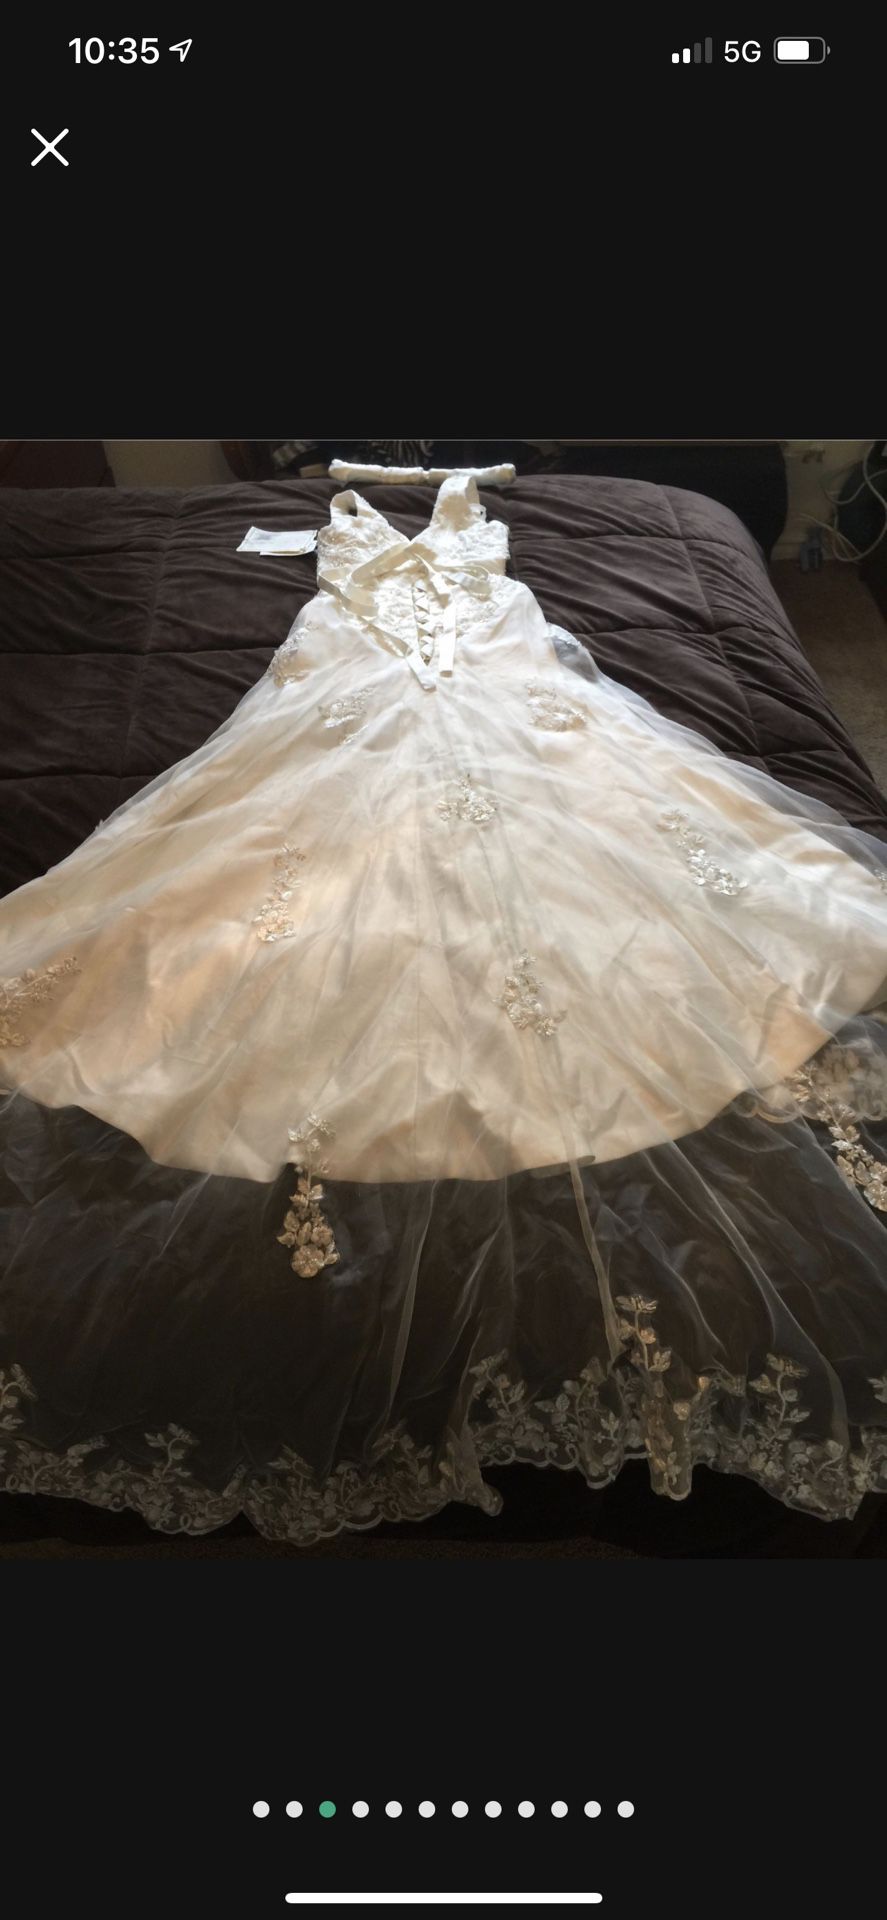 Brand New Wedding Dress Size 12